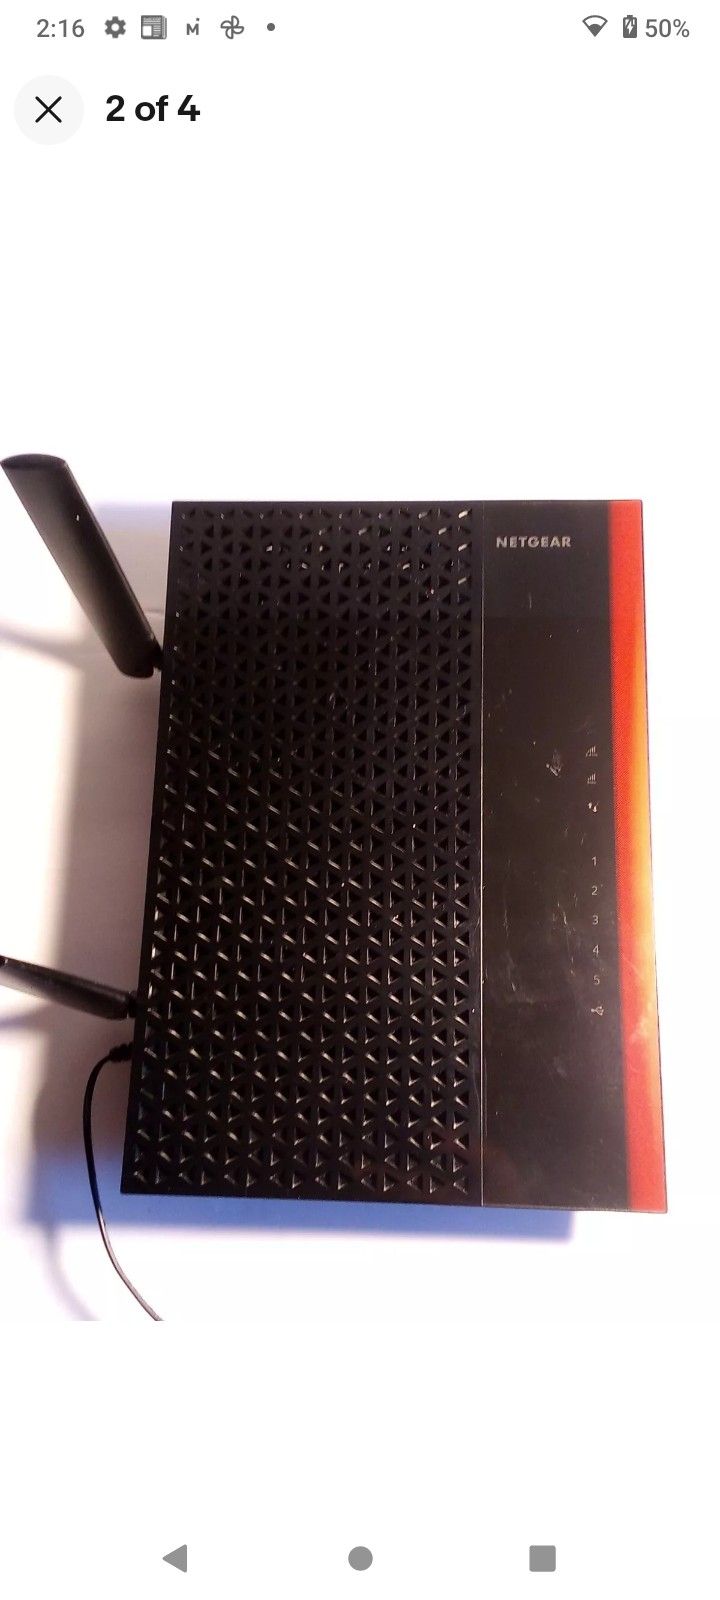 Netgear AC1750 Wireless Router